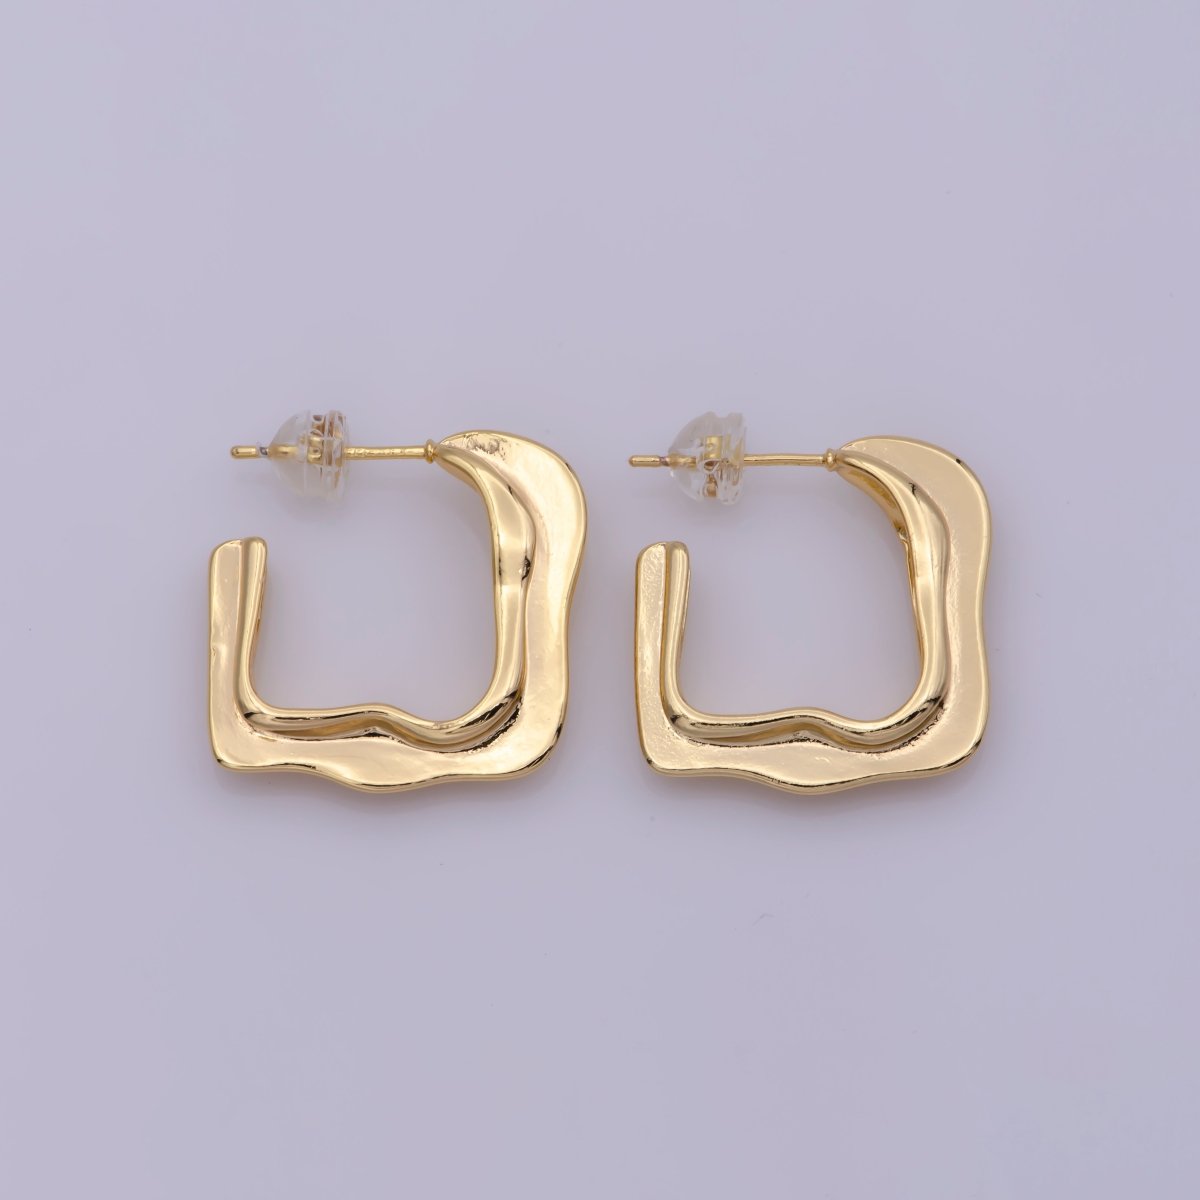 Gold hoops, geometric earring hoops small hoop earring dainty earring, minimalist earrings T-209 - DLUXCA